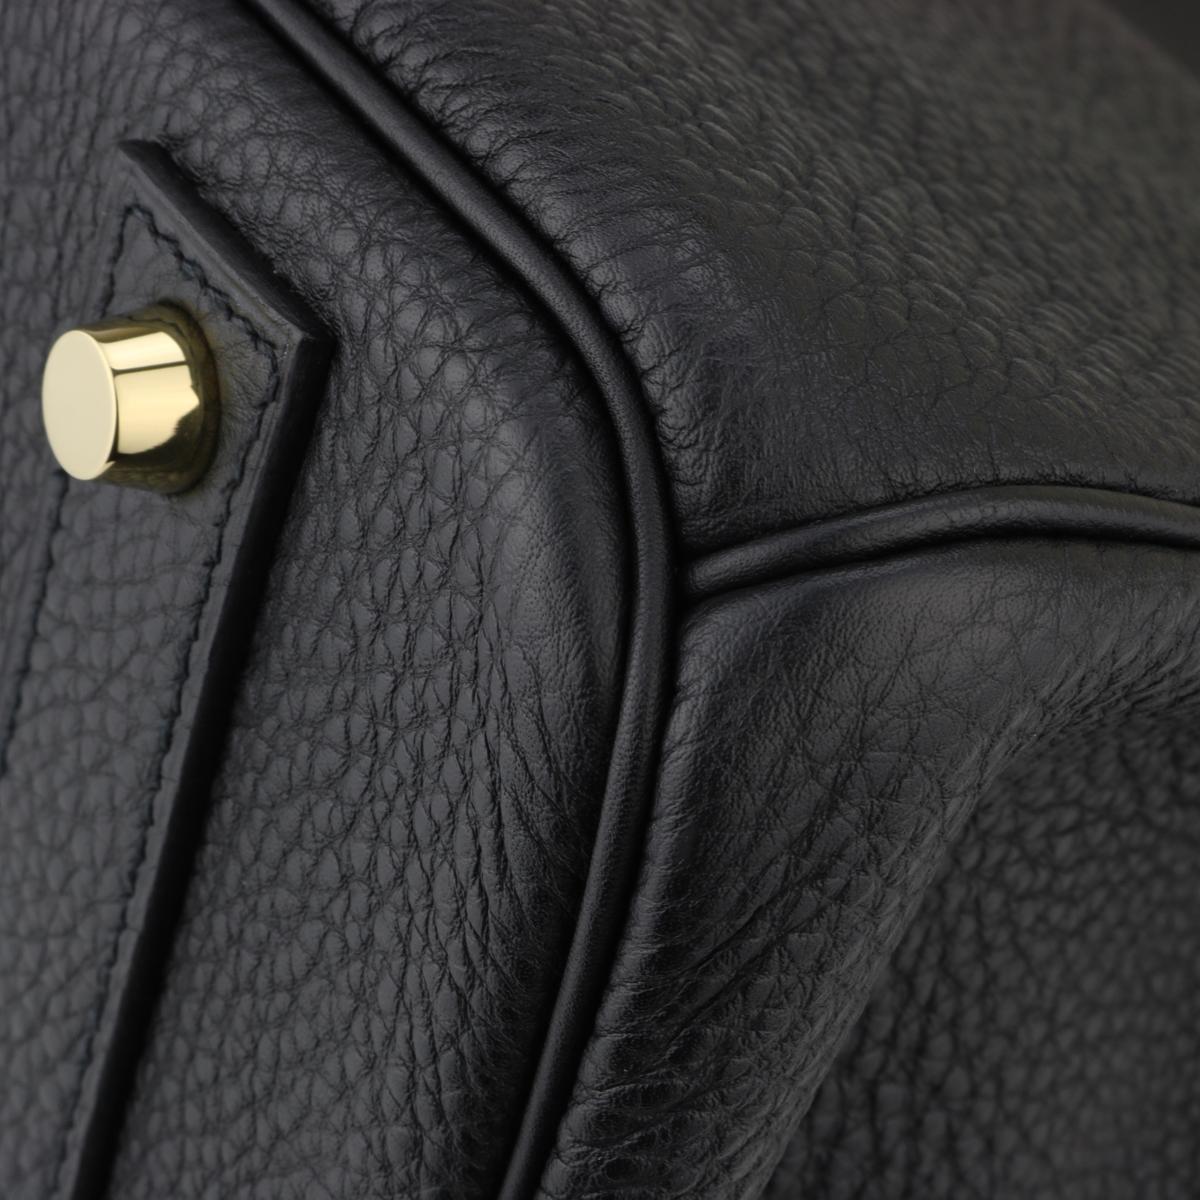 Hermès Birkin Bag 40cm Black Togo Leather with Gold Hardware Stamp N 2010 6